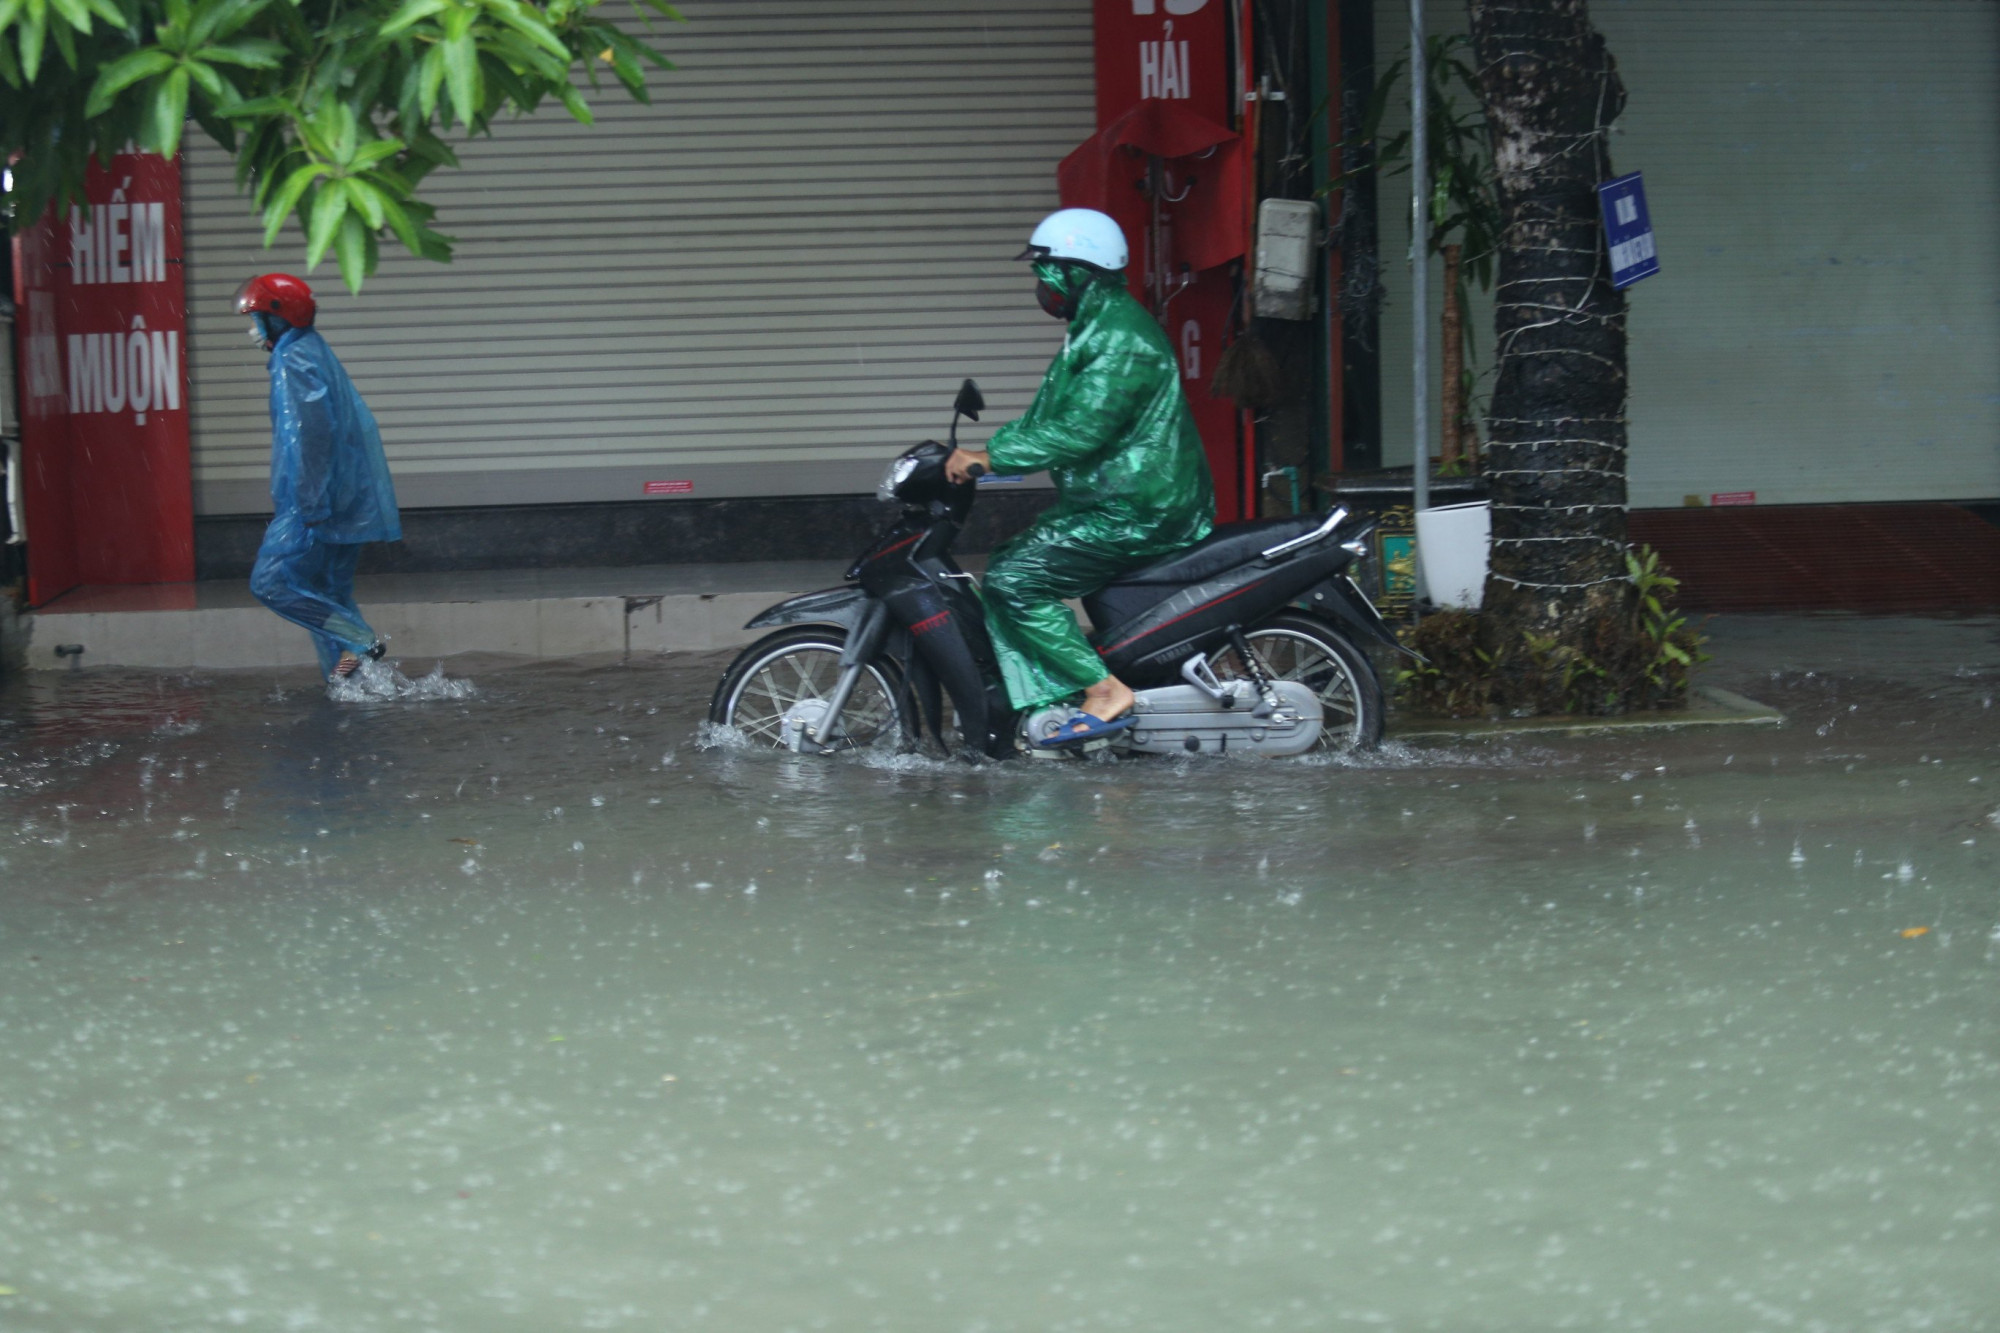 “Đây là trận mưa lớn nhất trên địa bàn kể từ đầu mùa mưa năm nay”, một người dân ở đường Nguyễn Du (TP. Hà Tĩnh) nói. Để tránh bị chết máy, nhiều người chạy xe máy phải leo lên vỉa hè để di chuyển qua tuyến đường bị ngập.